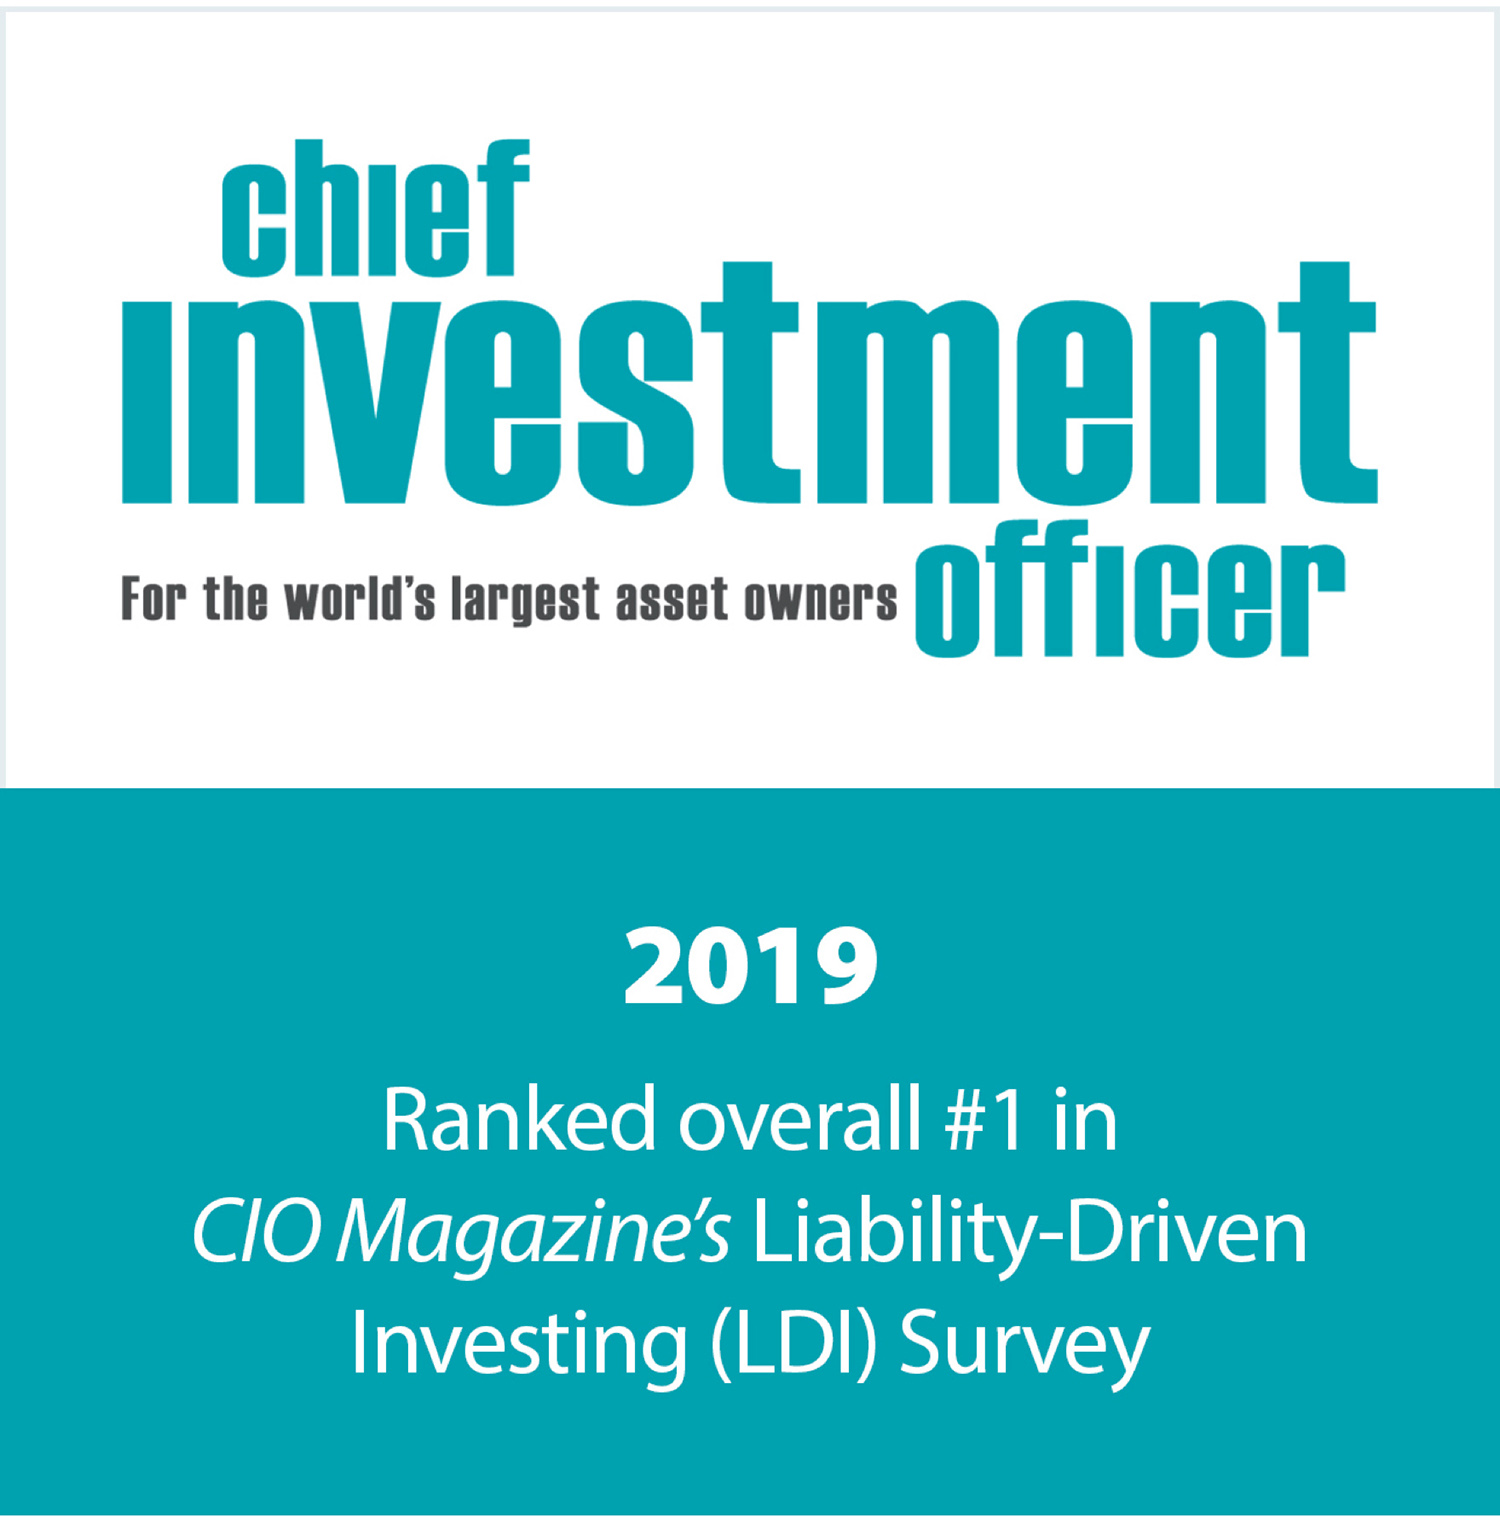 2019 Ranked overall #1 in CIO Magazine’s Liability-Driven Investing (LDI) Survey